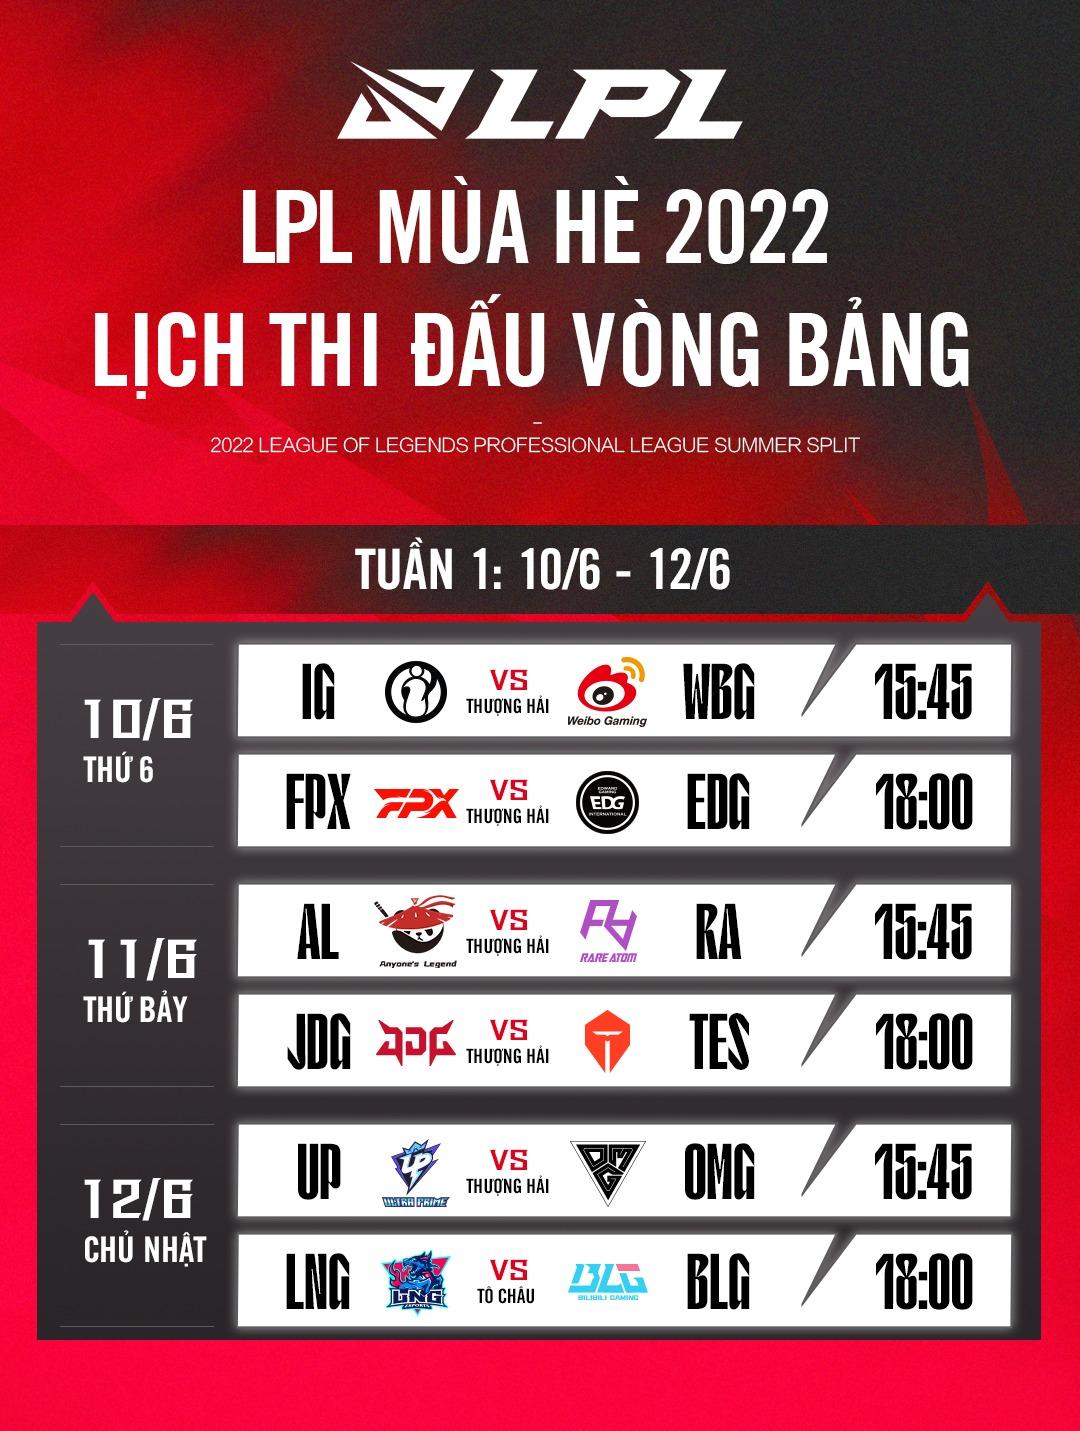 BTC công bố lịch thi đấu LPL Mùa Hè 2022: Trận khai mạc IG vs WBG sẽ khởi tranh vào ngày 10/6